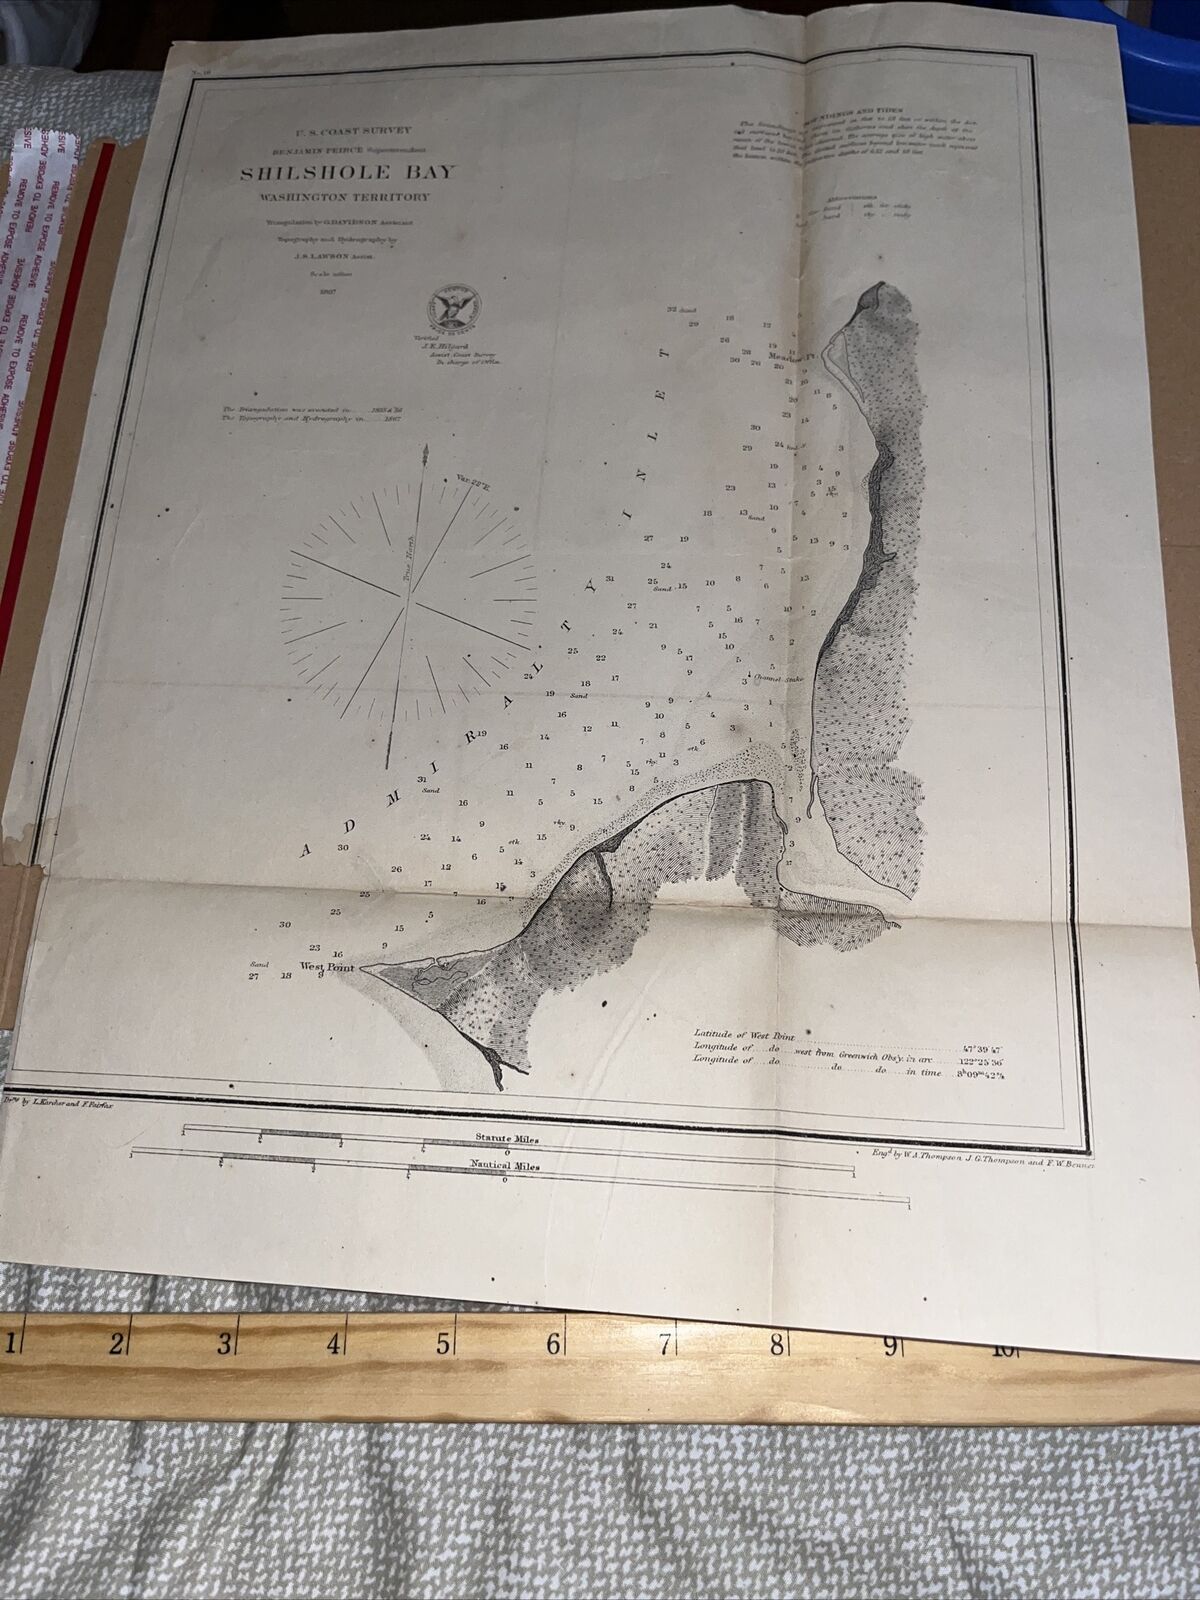 Antique 1867 US Map: U. S. Coast Survey - Shilshole Bay in Washington Territory